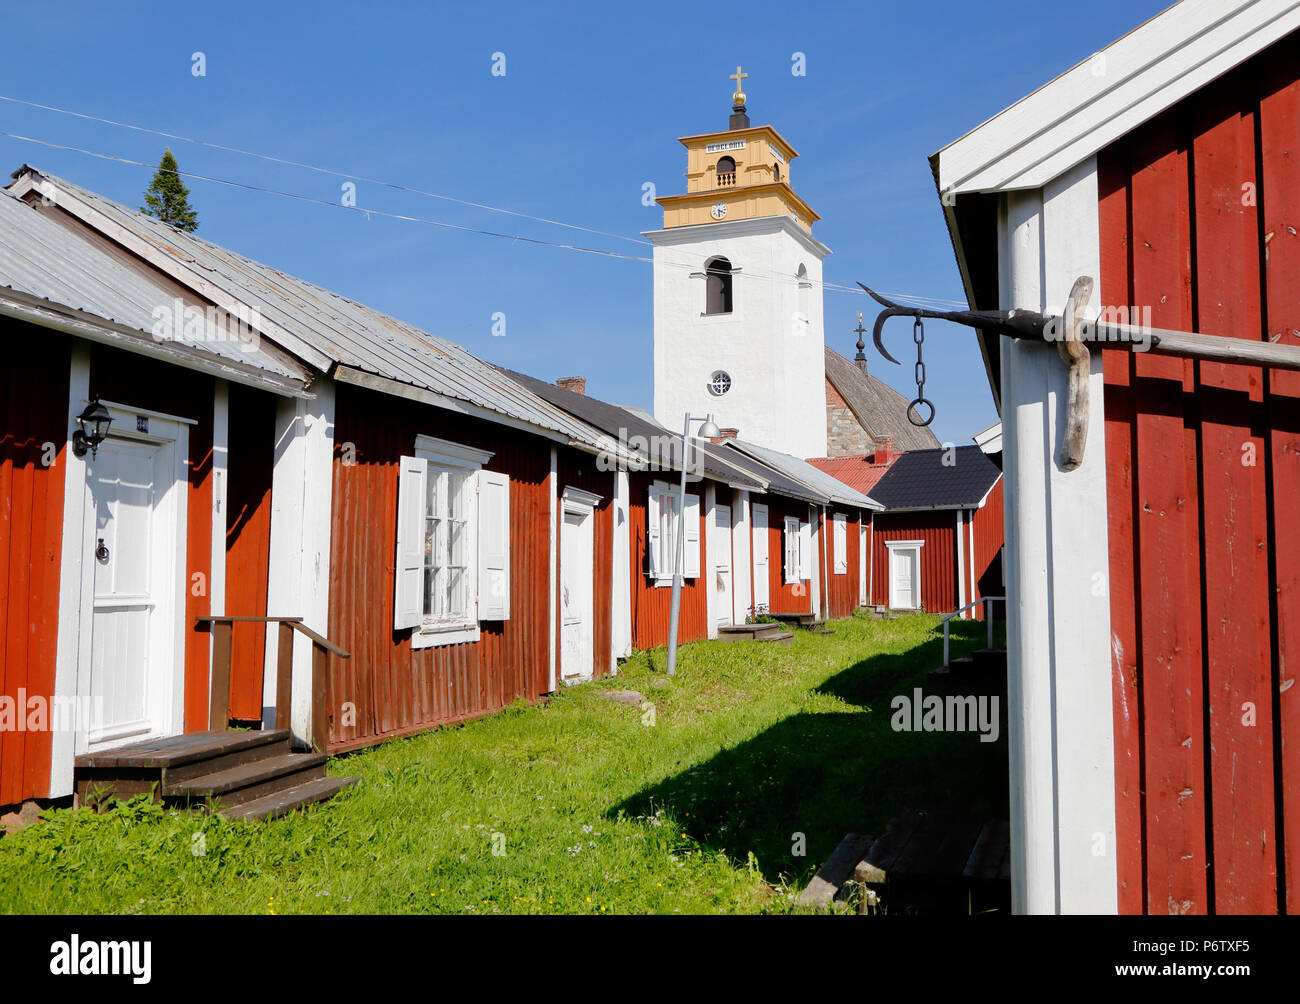 Le righe con capanne rosso nella chiesa di Gammelstad città situata vicino la città svedese di Lulea. Foto Stock